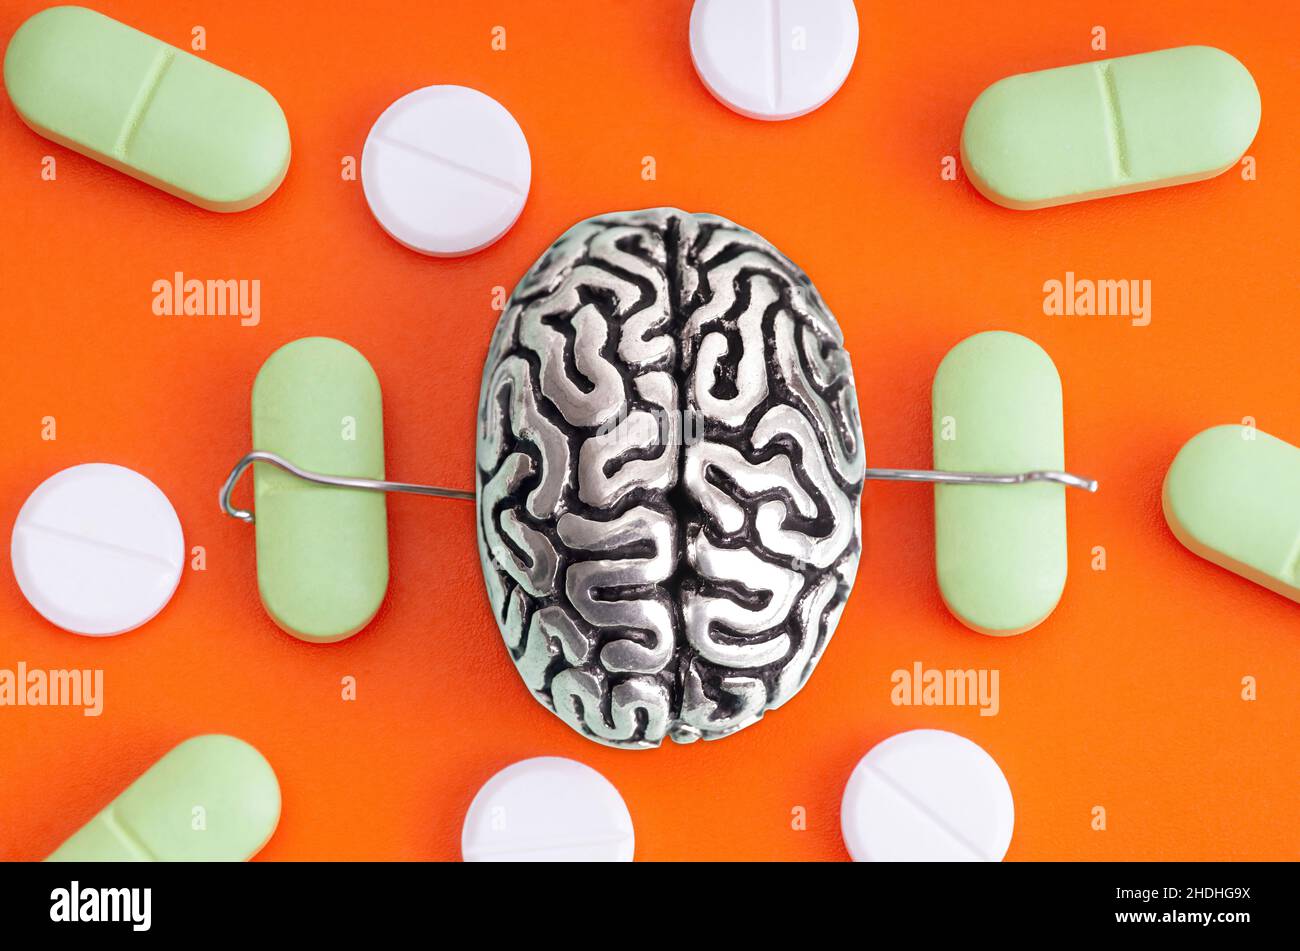 Miniatur-Stahlkopie eines menschlichen Gehirns mit Händen, die Pillen zwischen den verstreuten Drogen auf einem orangefarbenen Hintergrund platziert halten. Schmerzmittel verwenden Störung Konz Stockfoto